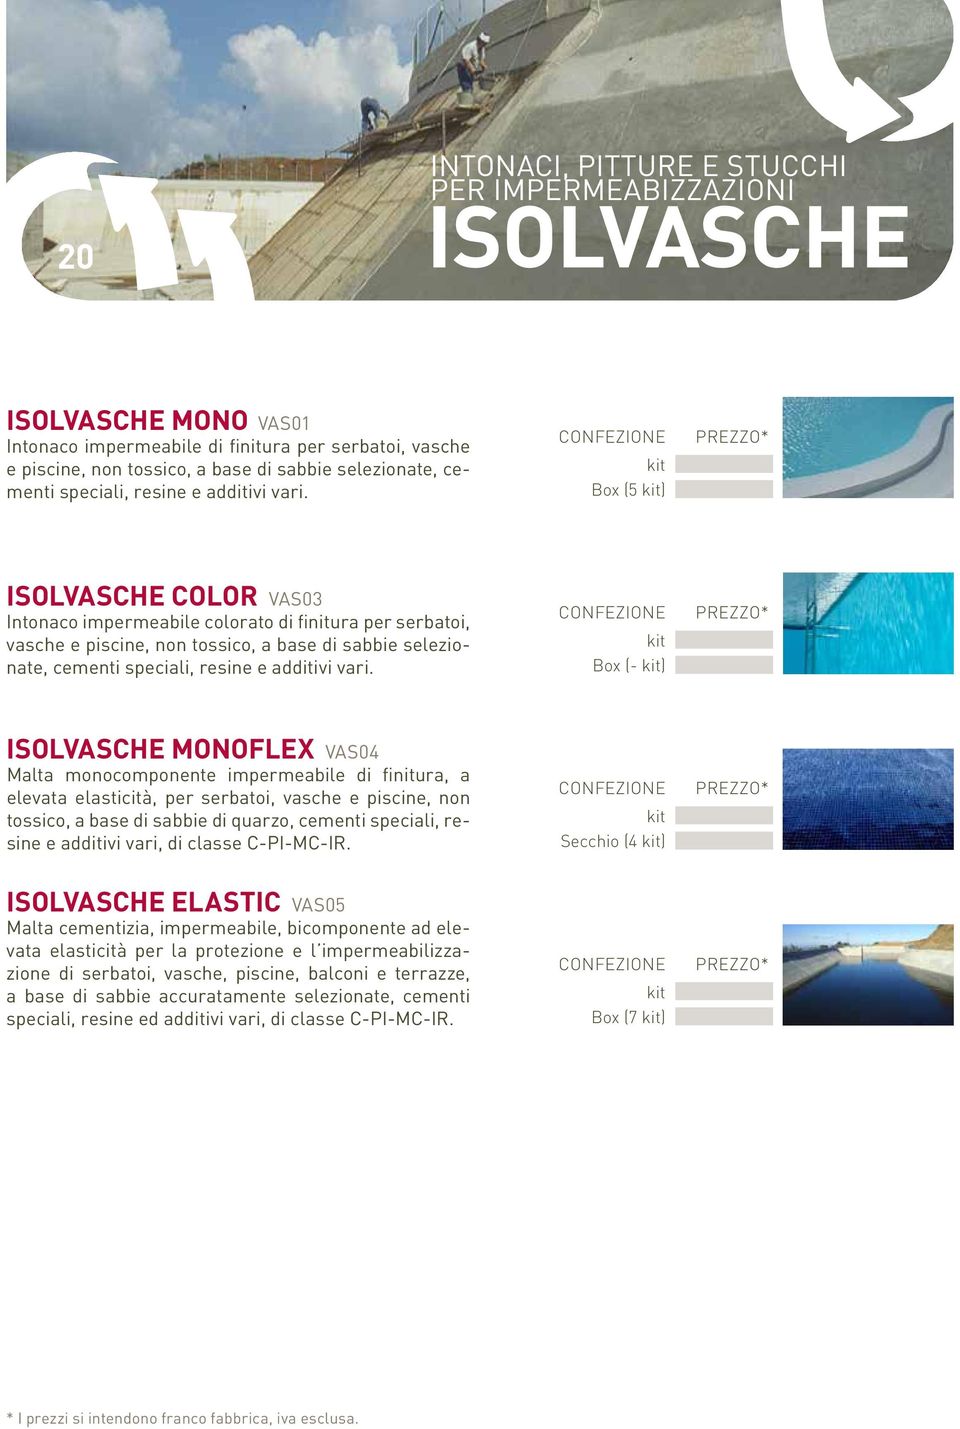 Box (5 ) ISOLVASCHE COLOR VAS03 Intonaco impermeabile colorato di finitura per serbatoi, vasche e piscine, non tossico, a base di sabbie selezionate,  Box (- ) ISOLVASCHE MONOFLEX VAS04 Malta